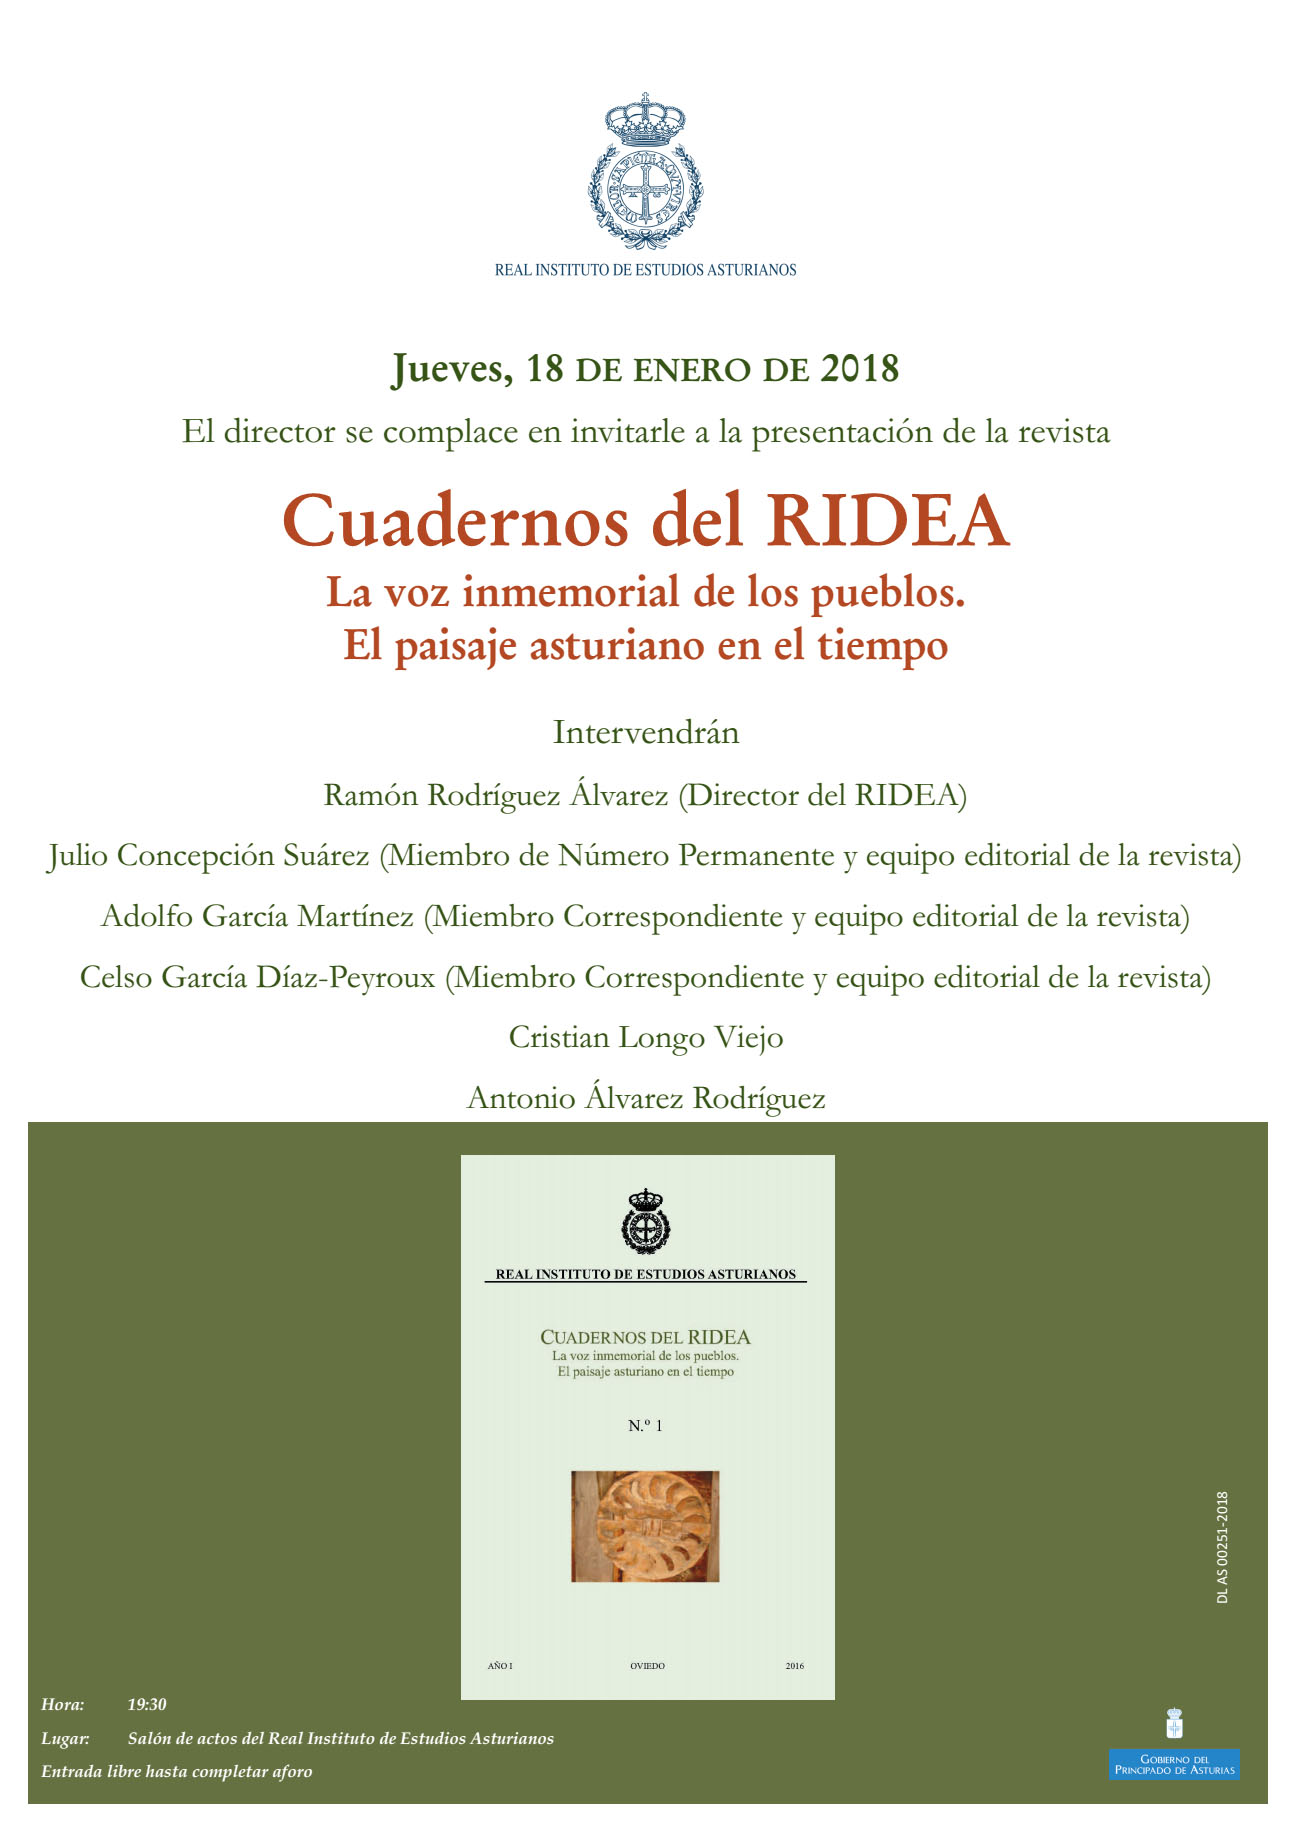 Imagen - Presentación de la revista Cuadernos del RIDEA: La voz inmemorial de los pueblos. El paisaje asturiano en el tiempo